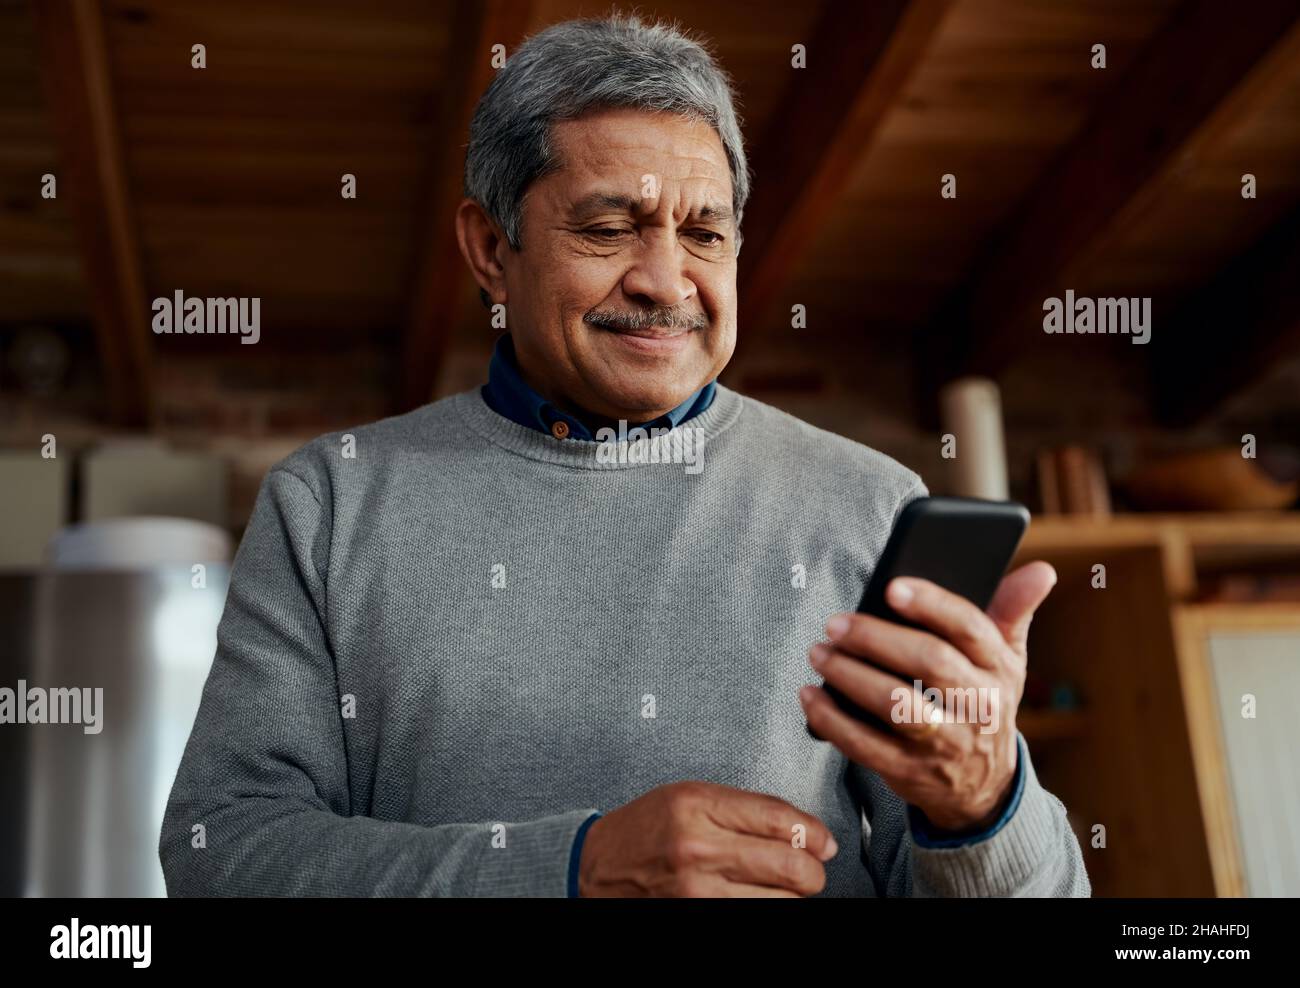 Souriant, un homme âgé et multiculturel lit un message sur son smartphone tout en se tenant dans une cuisine moderne. Banque D'Images